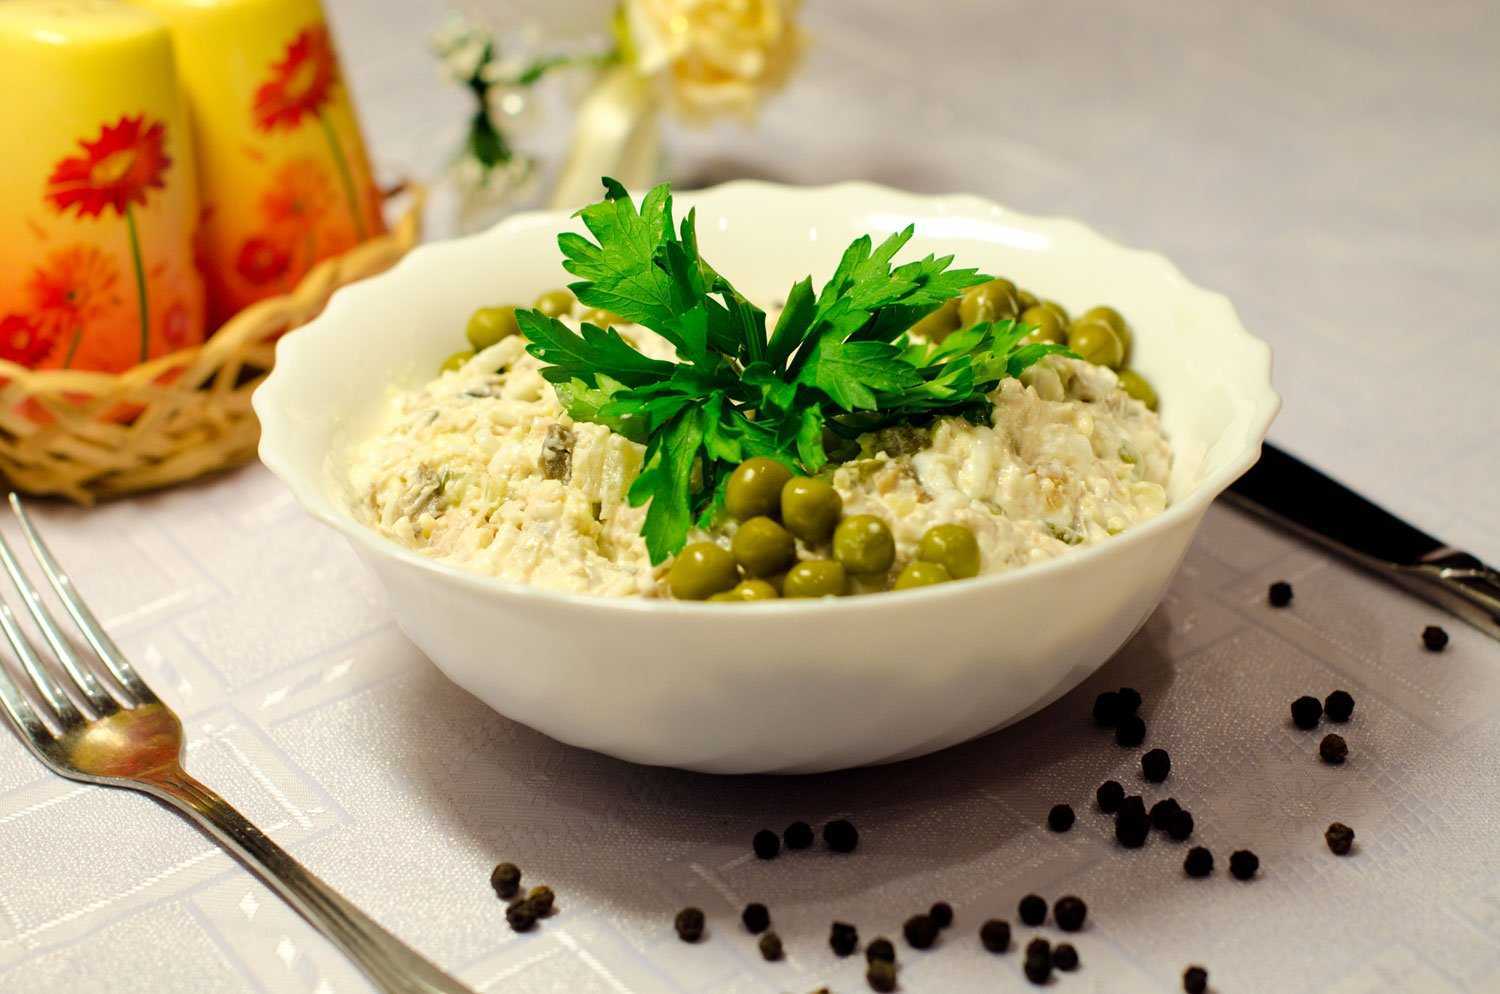 Салат из рыбных консервов с рисом - кладезь полезных веществ и потрясающий вкус: рецепт с фото и видео